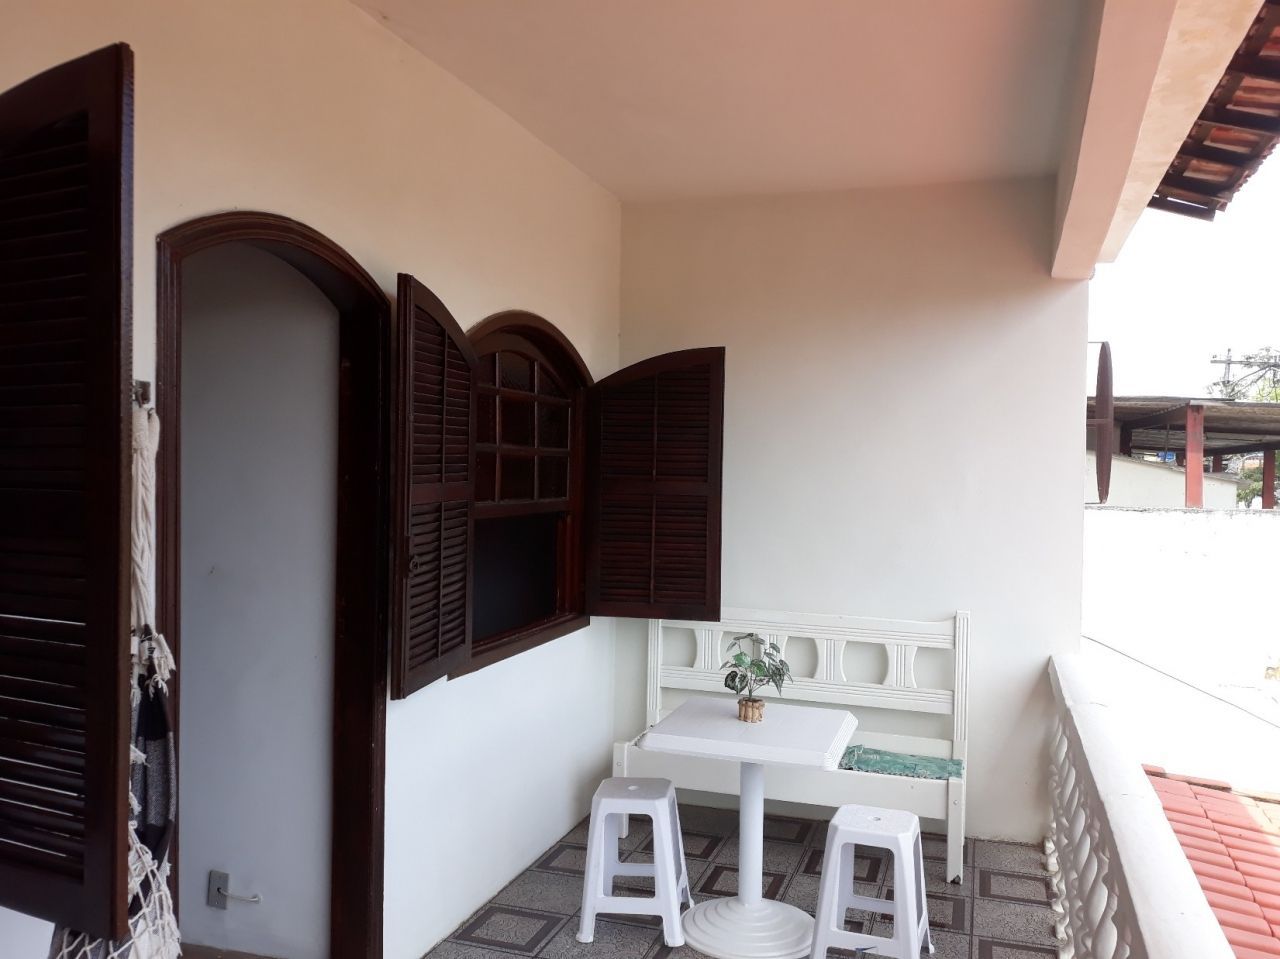 Casa  venda  no Chcaras Rio-petrpolis - Duque de Caxias, RJ. Imveis